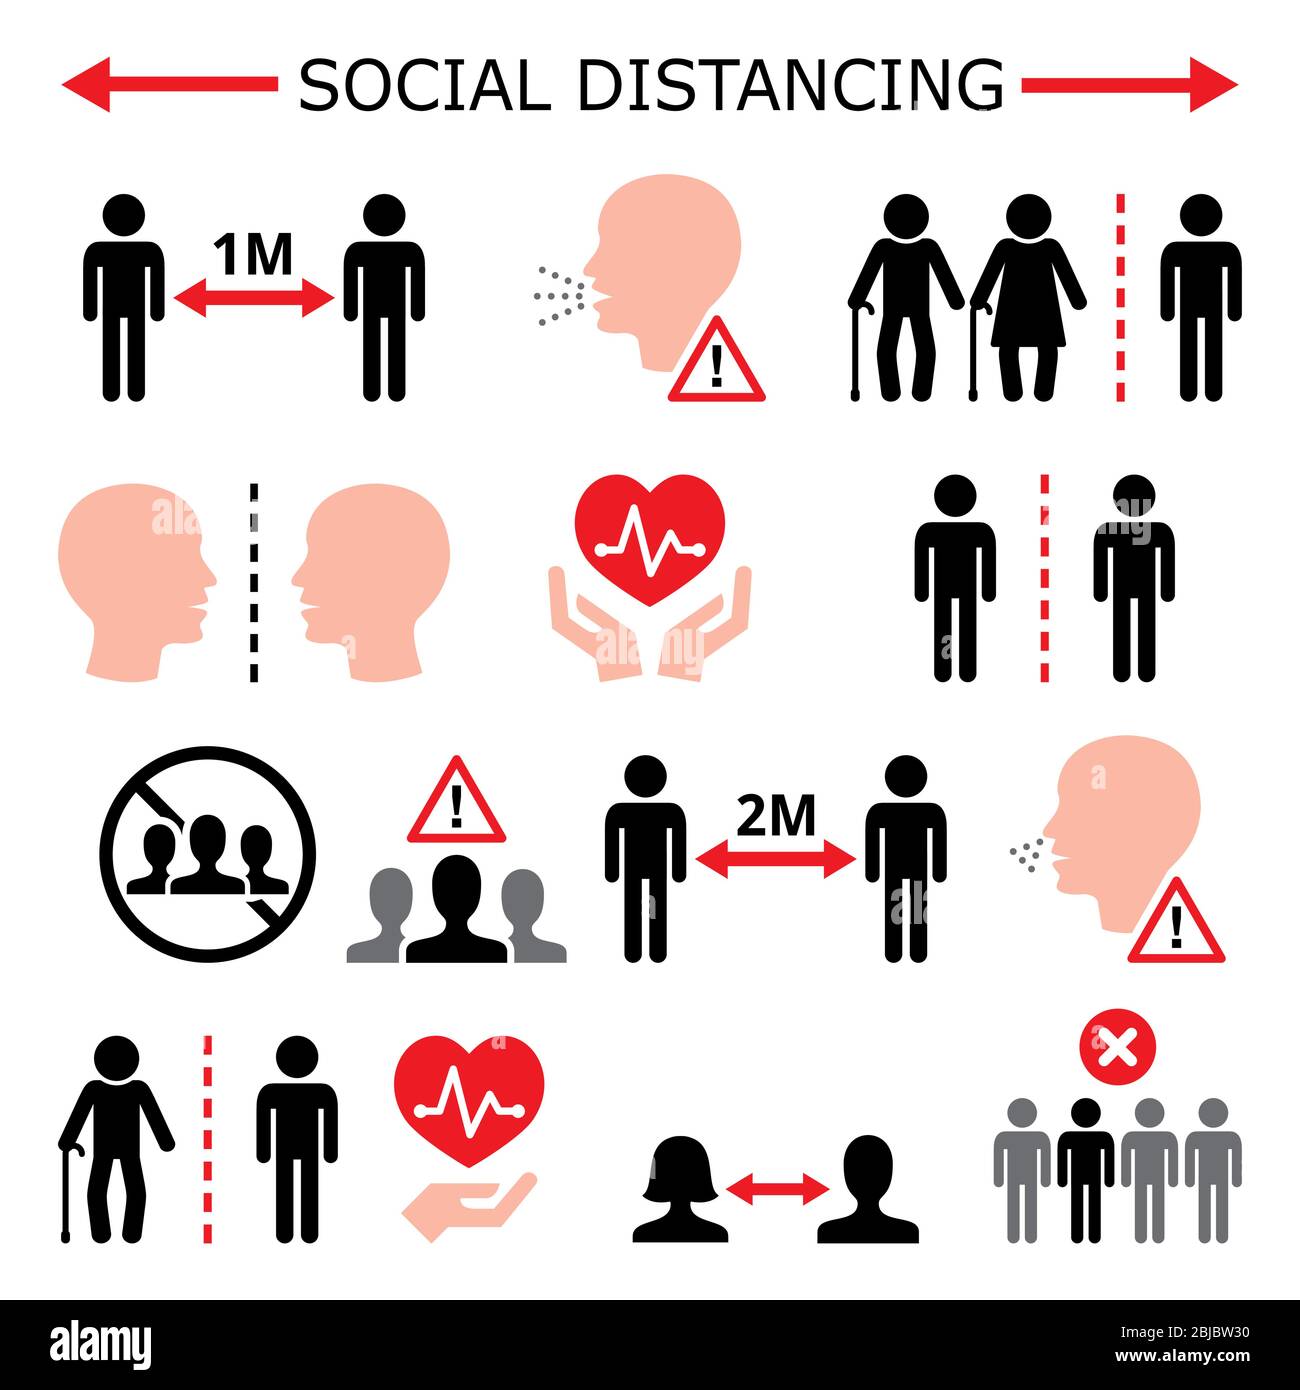 Soziale Distanzierung während Pandemie oder Epidemie Vektor-Farben-Symbole gesetzt, halten einen Abstand zwischen Menschen, die den physischen Raum zwischen Menschen zu erhöhen Stock Vektor